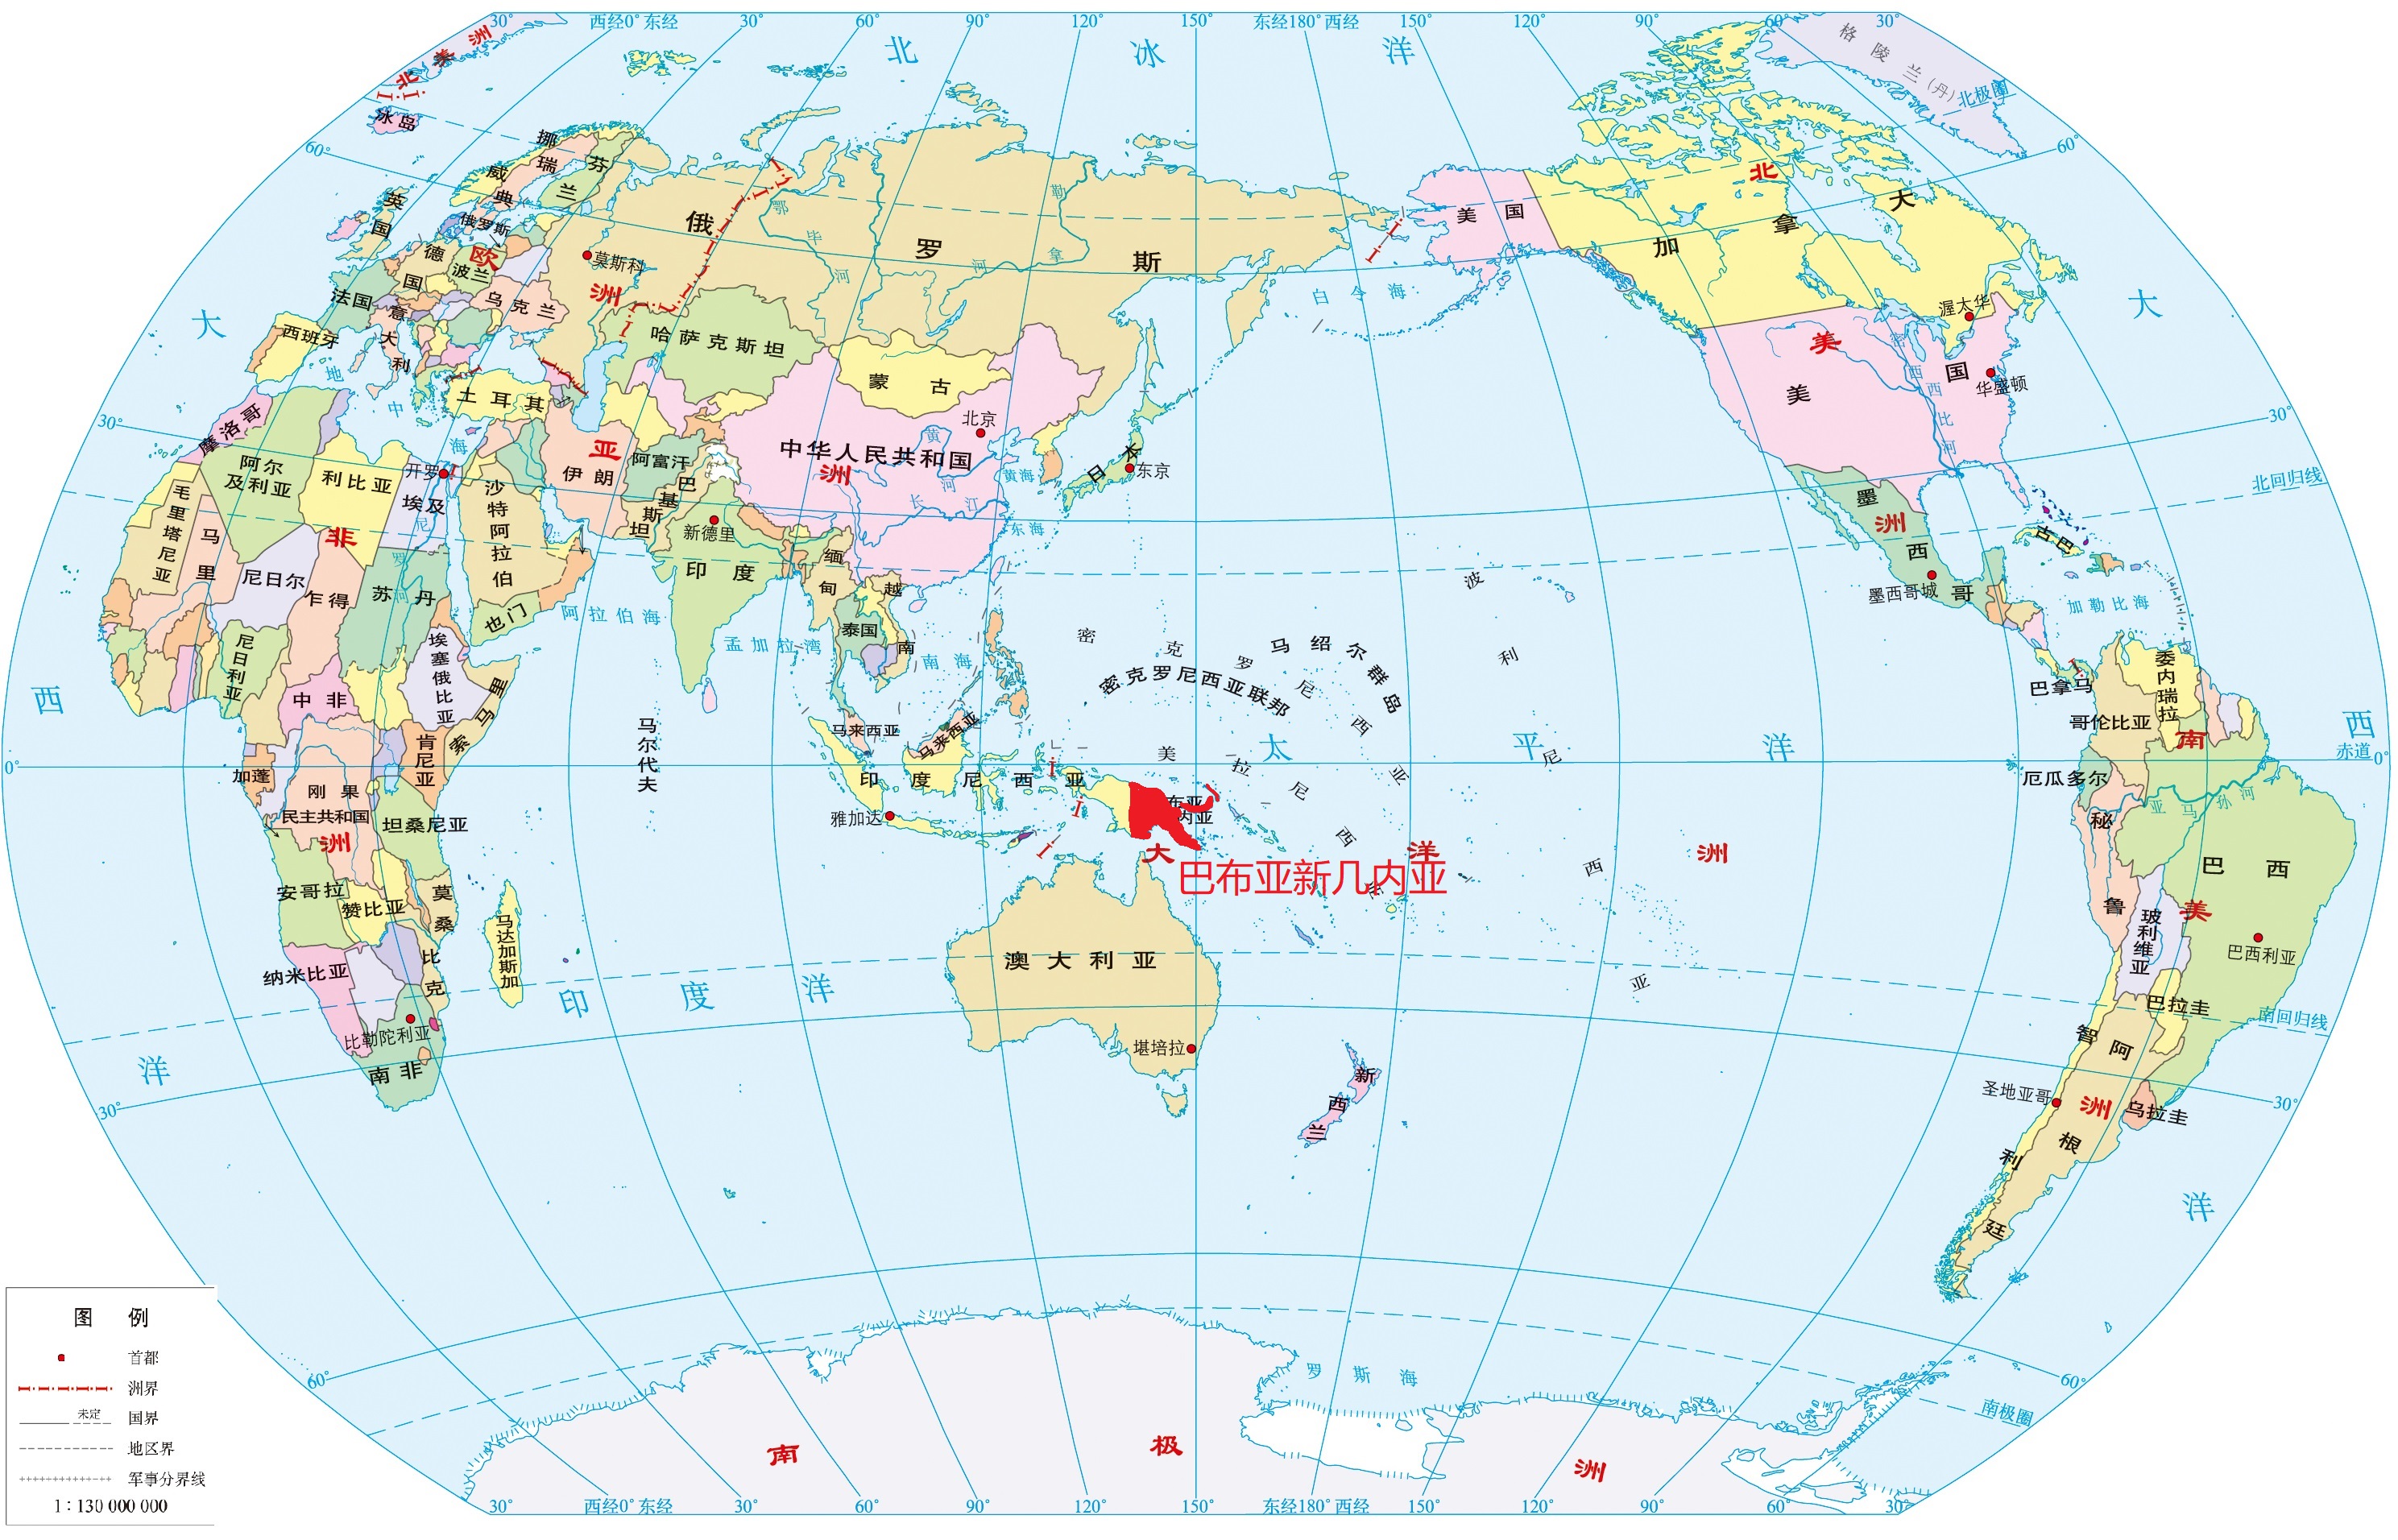 巴布亚地理位置图片